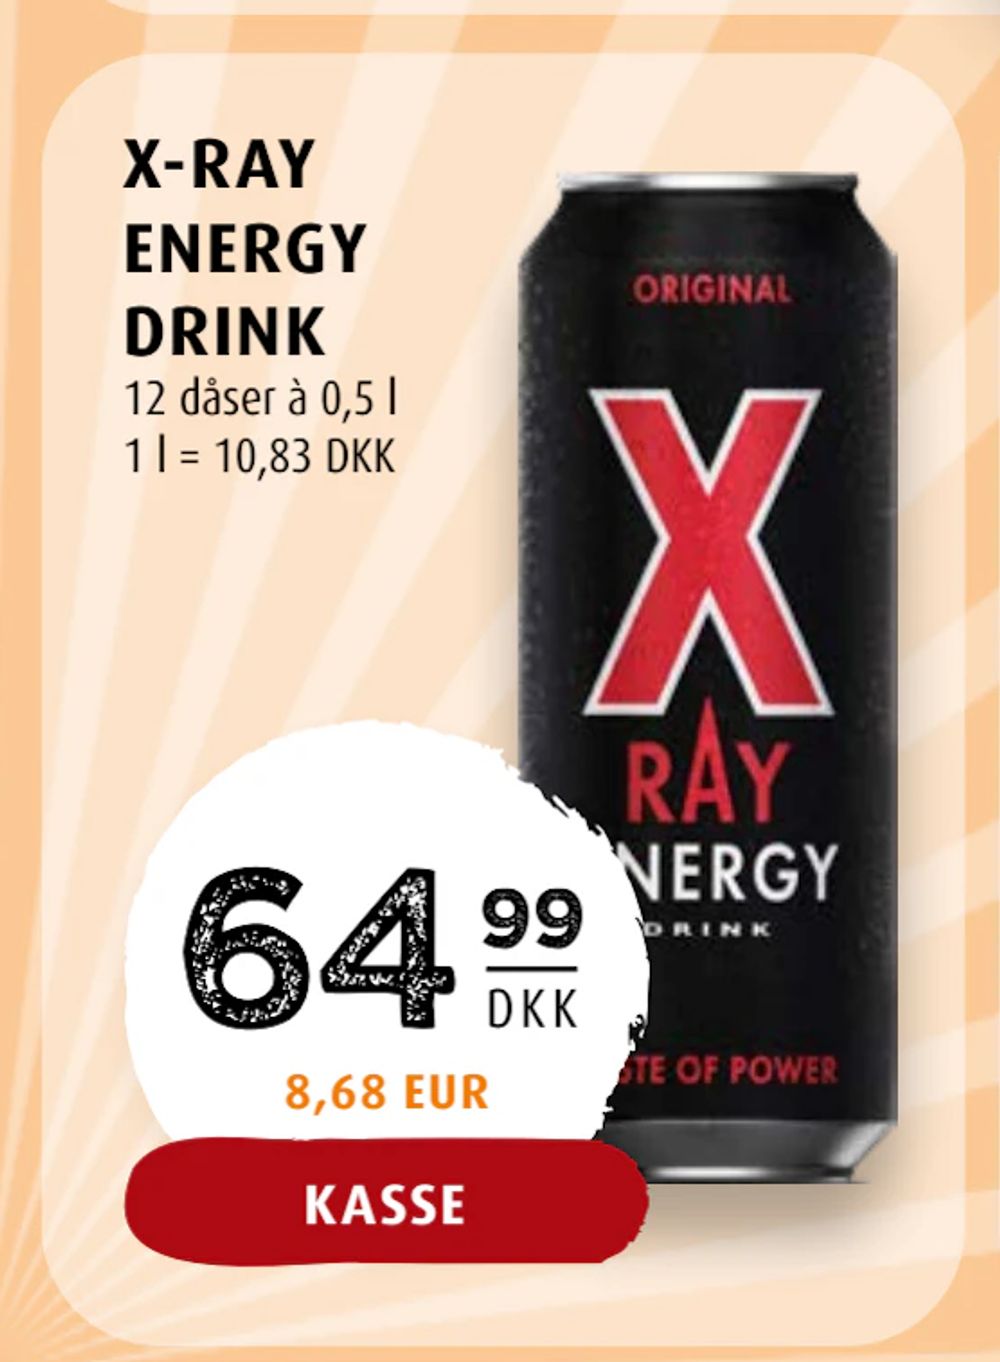 Tilbud på X-RAY ENERGY DRINK fra Scandinavian Park til 64,99 kr.